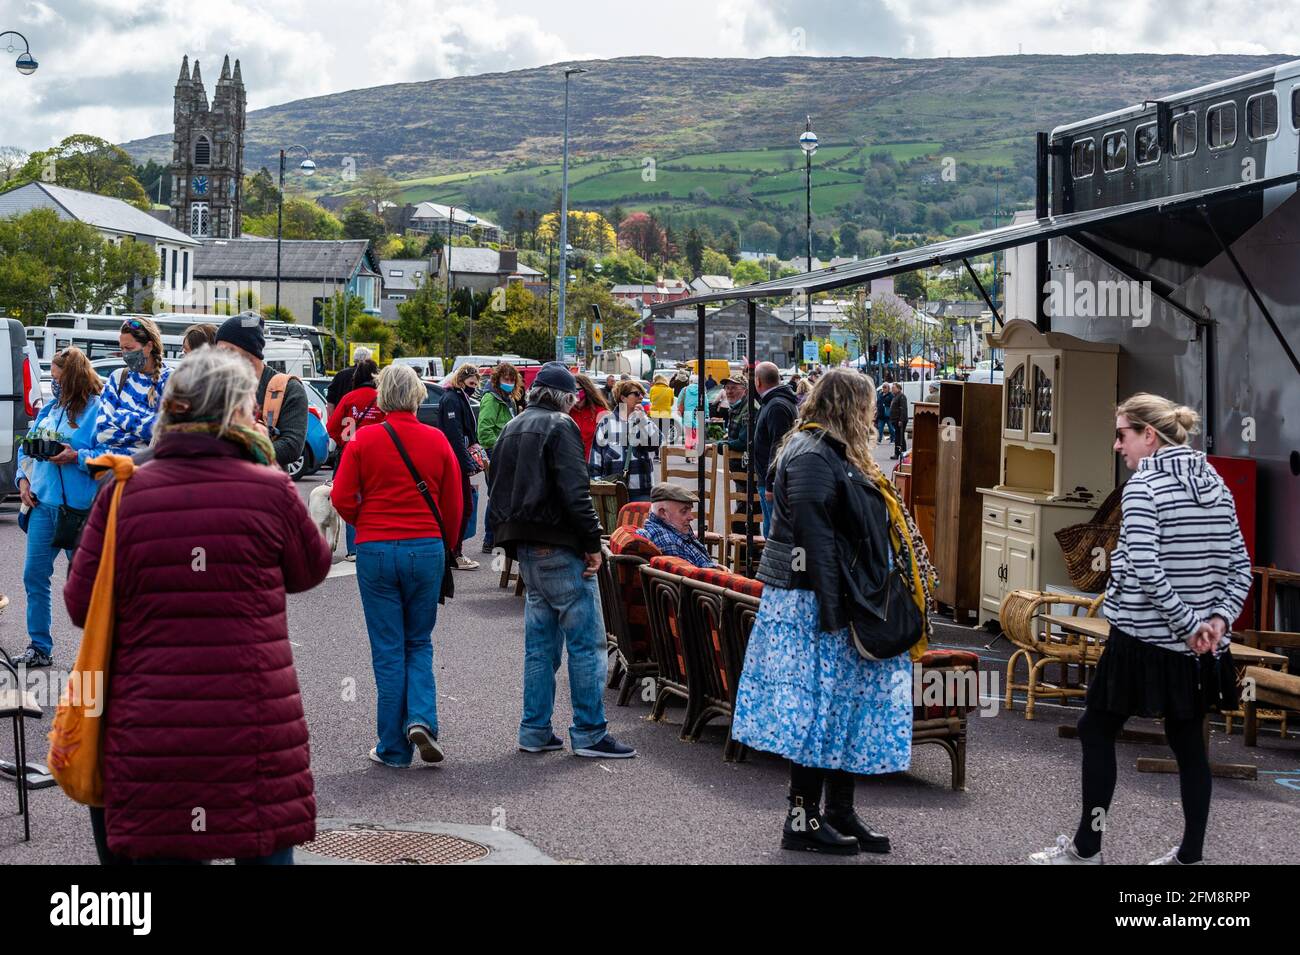 Bantry, West Cork, Irland. Mai 2021. Der Bantry Friday Market war heute sehr voll und war der erste Markt des Monats. Viele Menschen freuten sich darauf, dass einige COVID-19-Beschränkungen am Montag, den 10. Mai, gelockert werden. Quelle: AG News/Alamy Live News Stockfoto